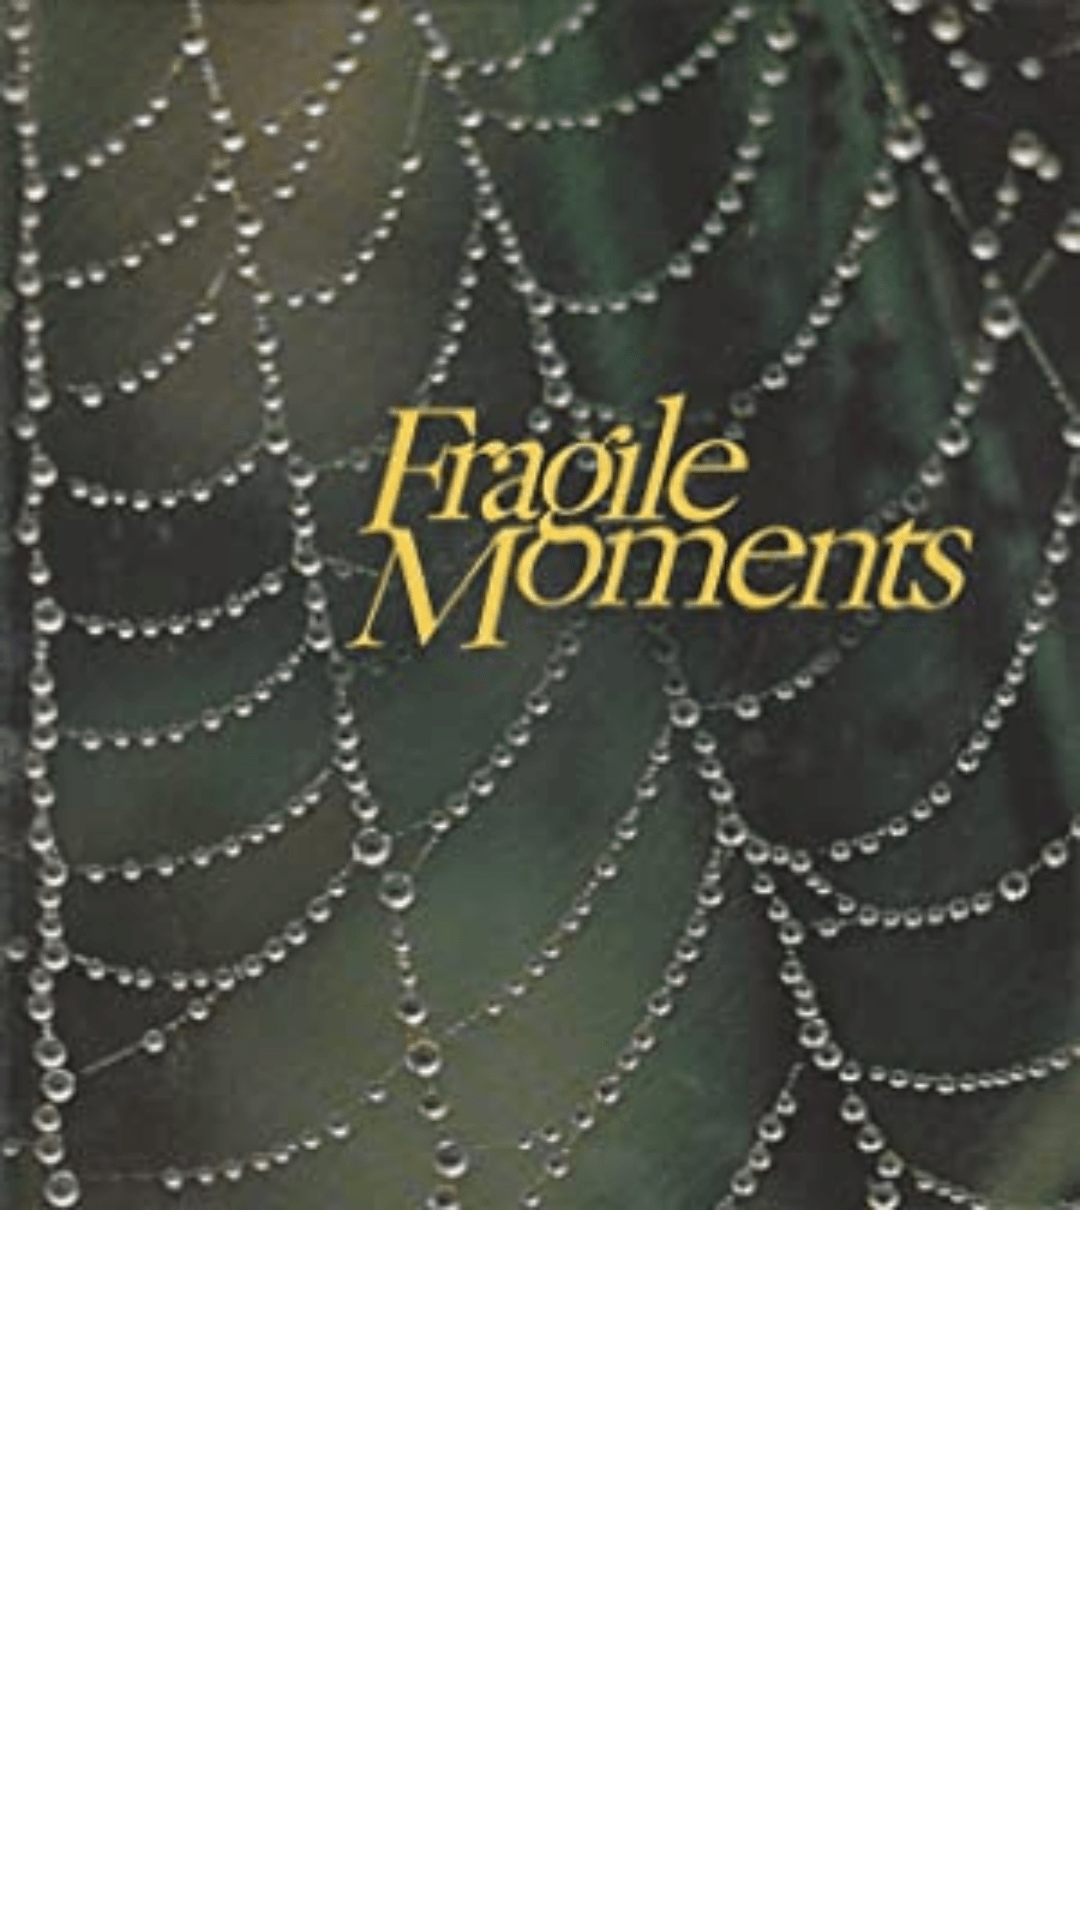 Fragile Moments: When God Speaks in Whispers